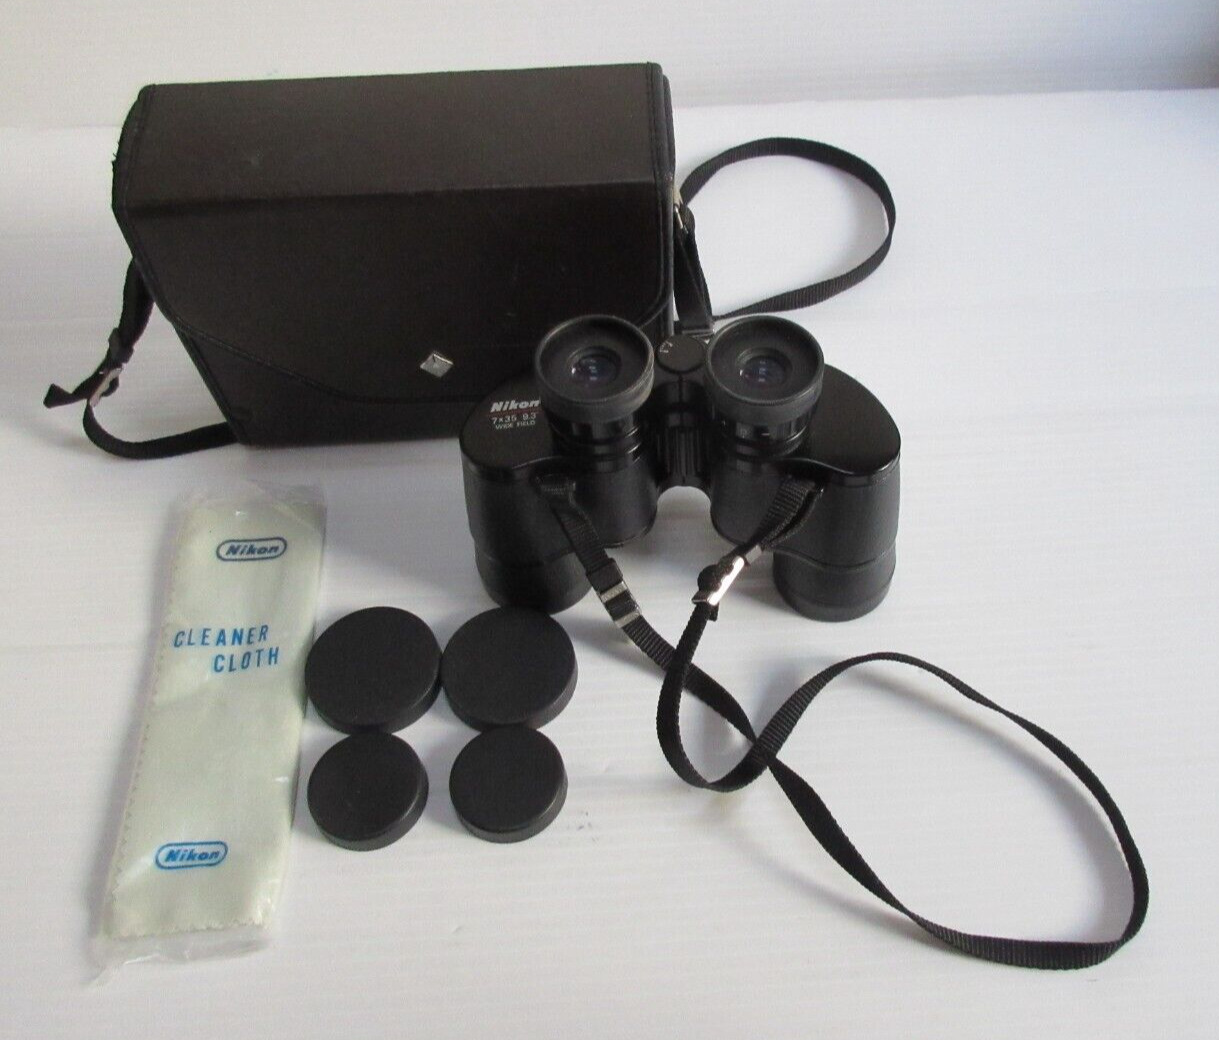 Vintage Nikon No. 156044 7x35 9.3° Wide Field Binoculars Made in Japan